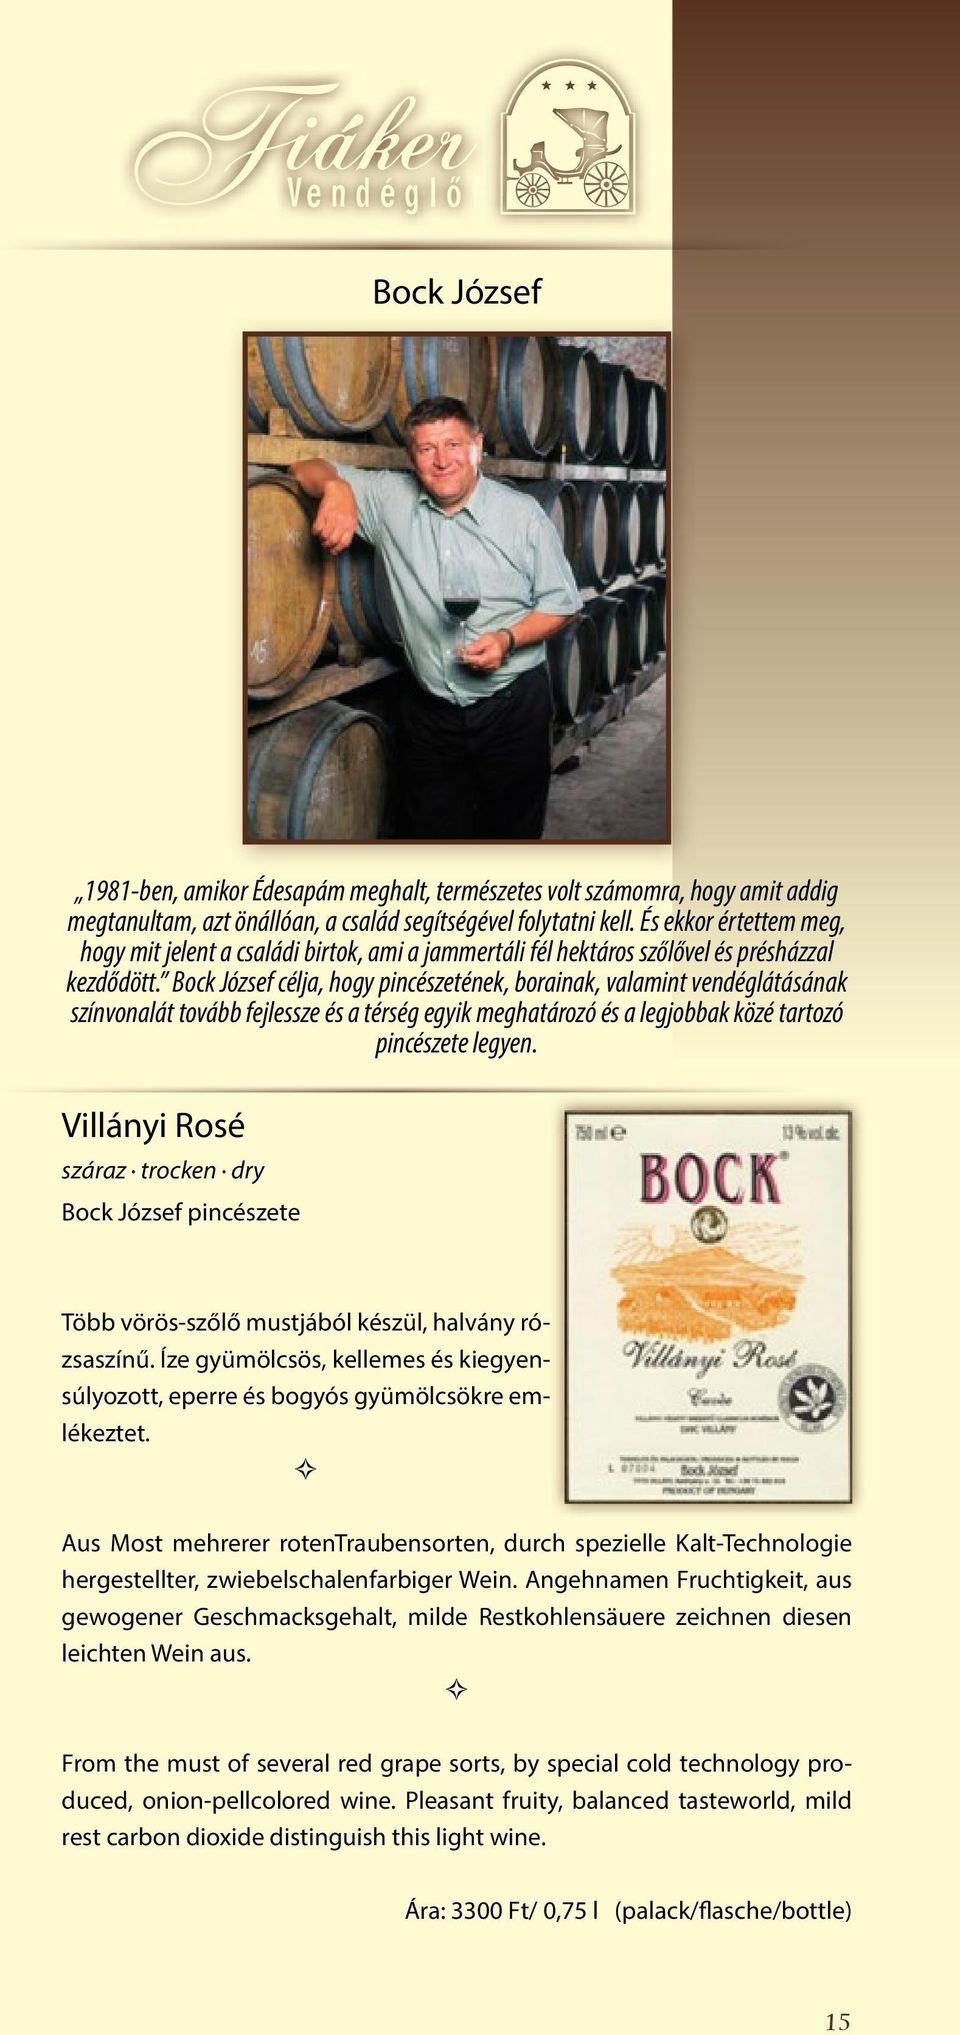 Bock József célja, hogy pincészetének, borainak, valamint vendéglátásának színvonalát tovább fejlessze és a térség egyik meghatározó és a legjobbak közé tartozó pincészete legyen.